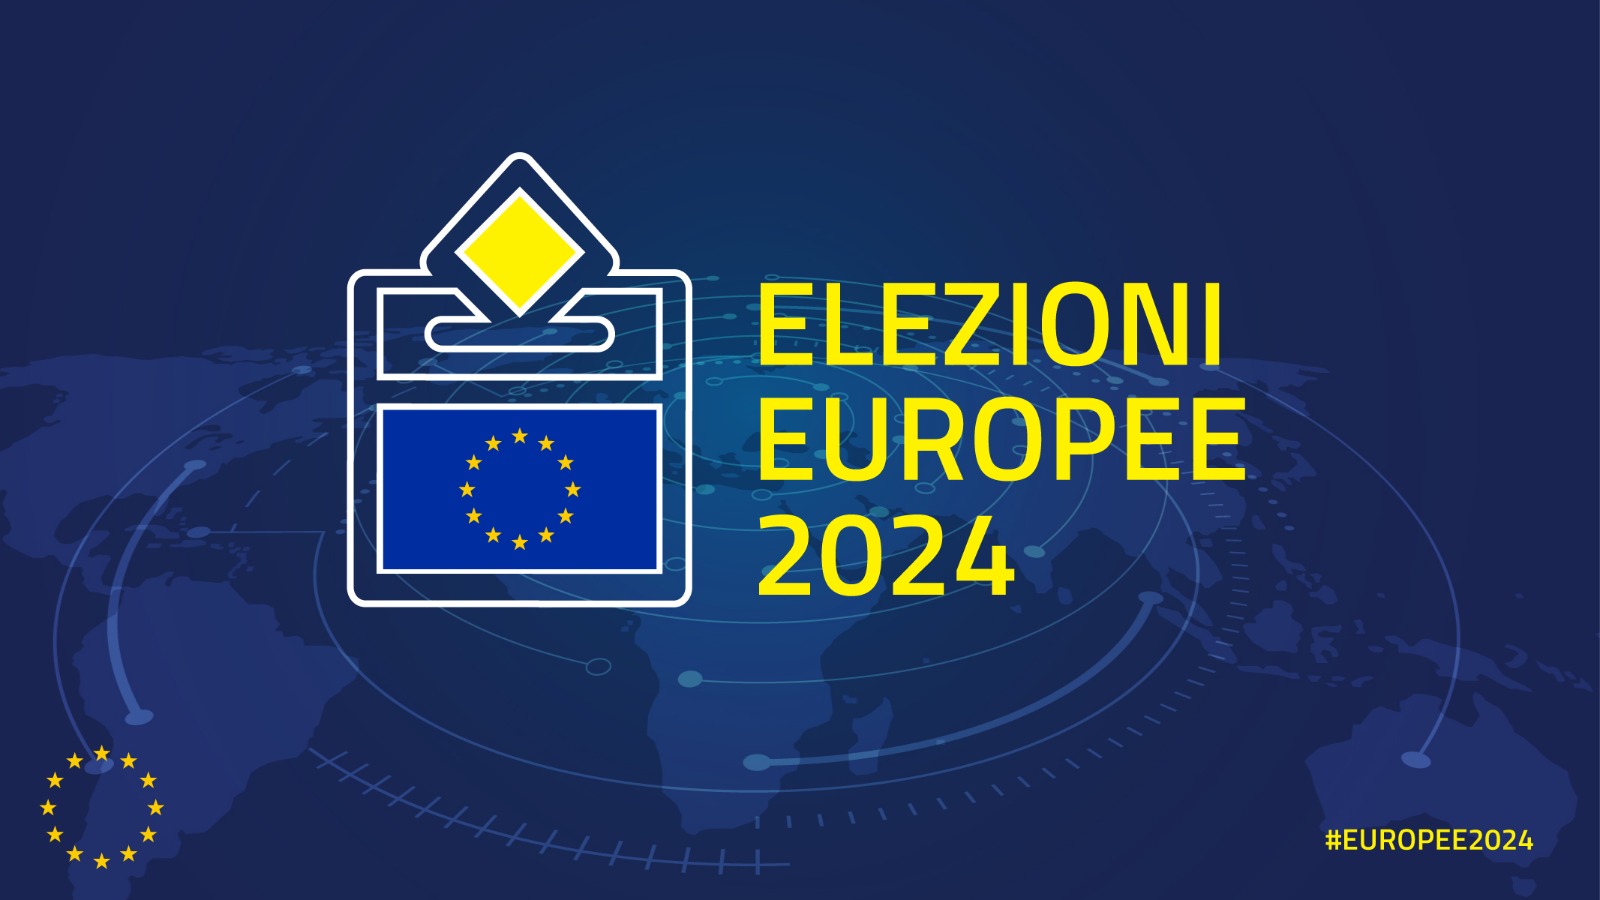 Elezioni dei membri del parlamento europeo spettanti all'italia dell'8 e 9 giugno 2024 - Risultati definitivi